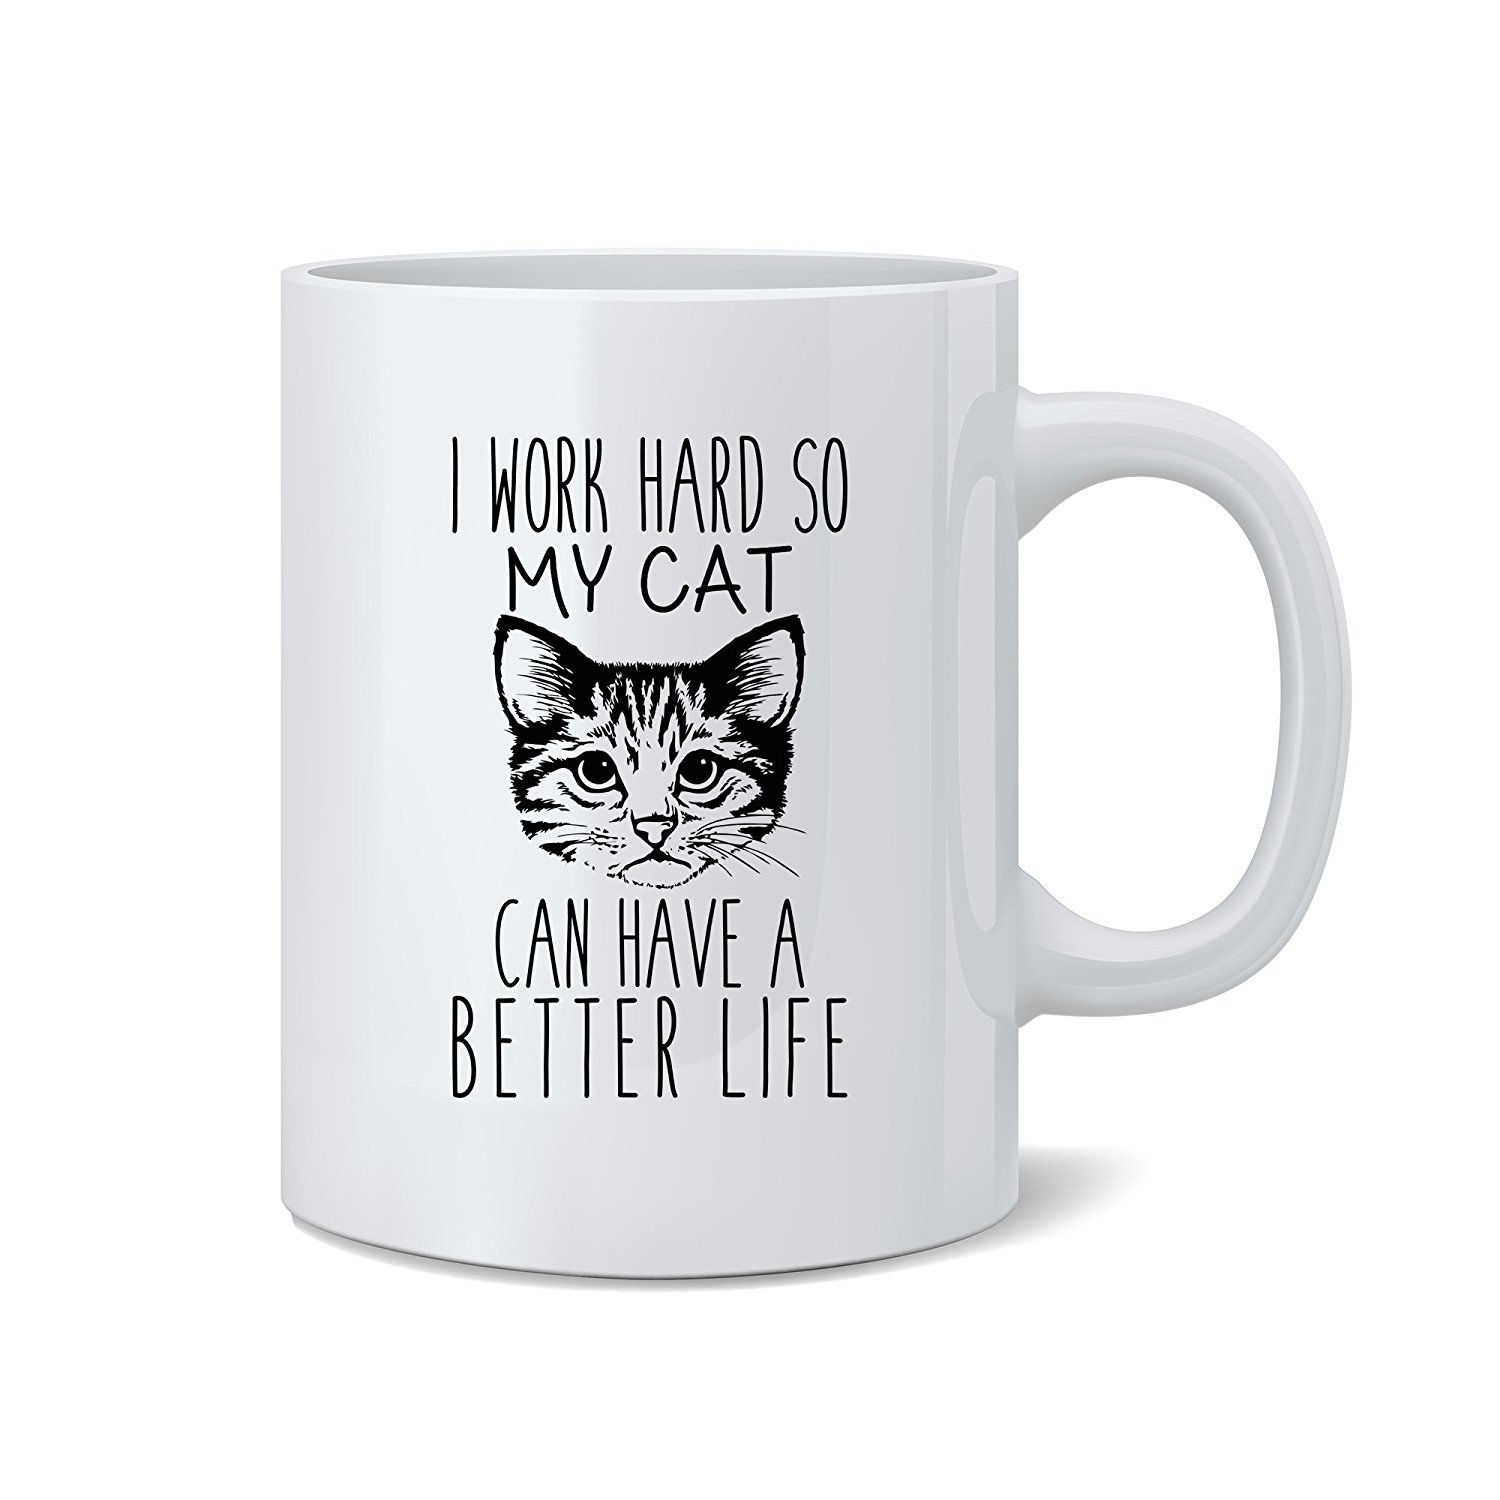 cat lover mug